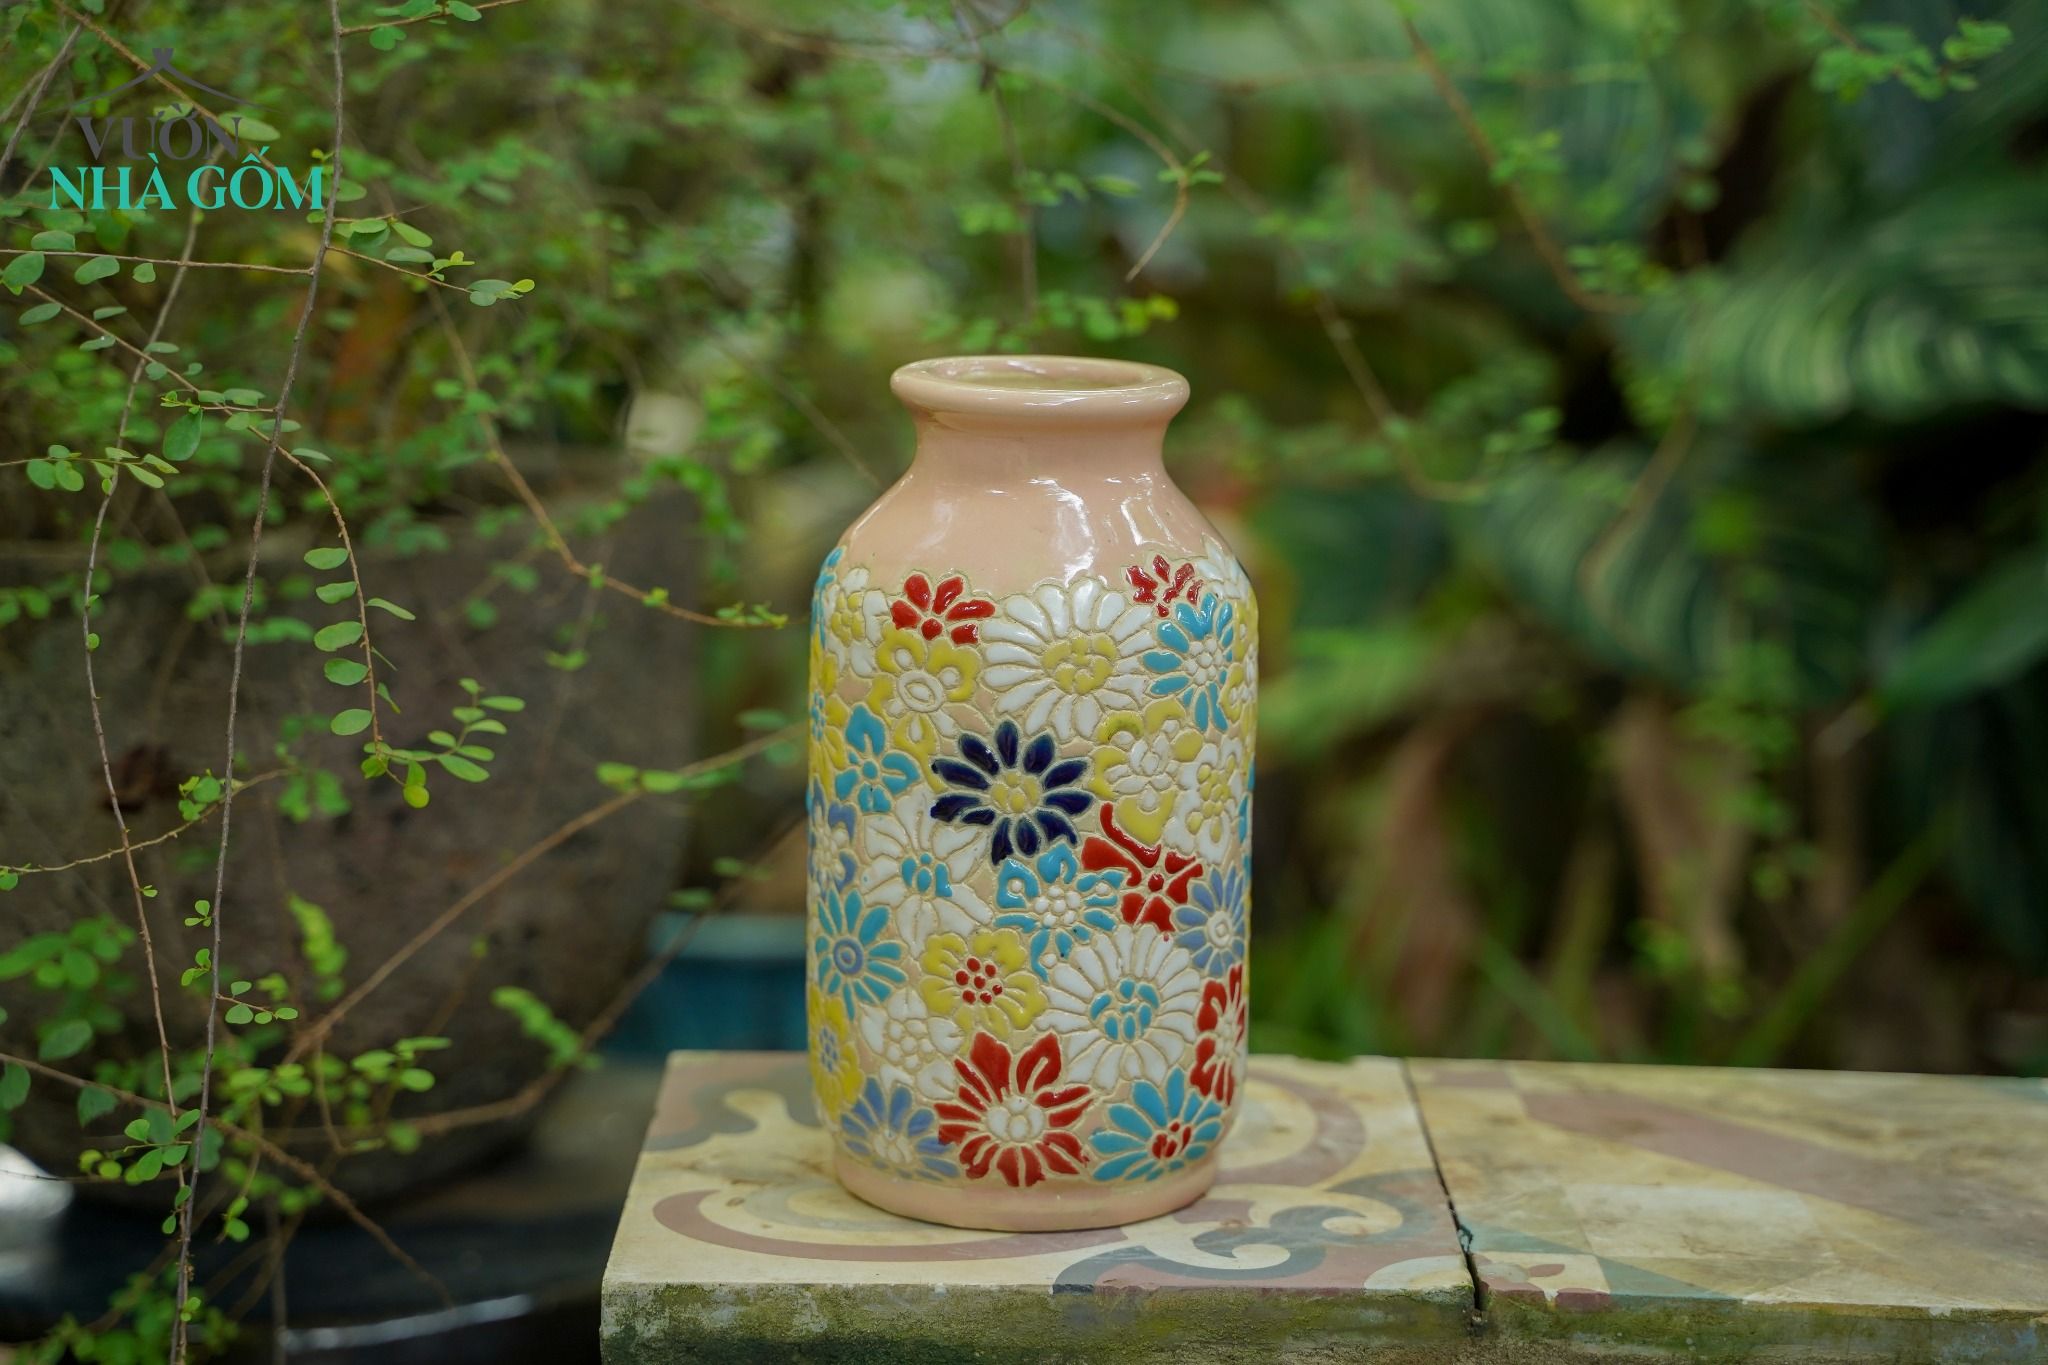  Bình cắm hoa, họa tiết khắc chìm Bách Hoa, C21xR7, gốm mỹ nghệ 